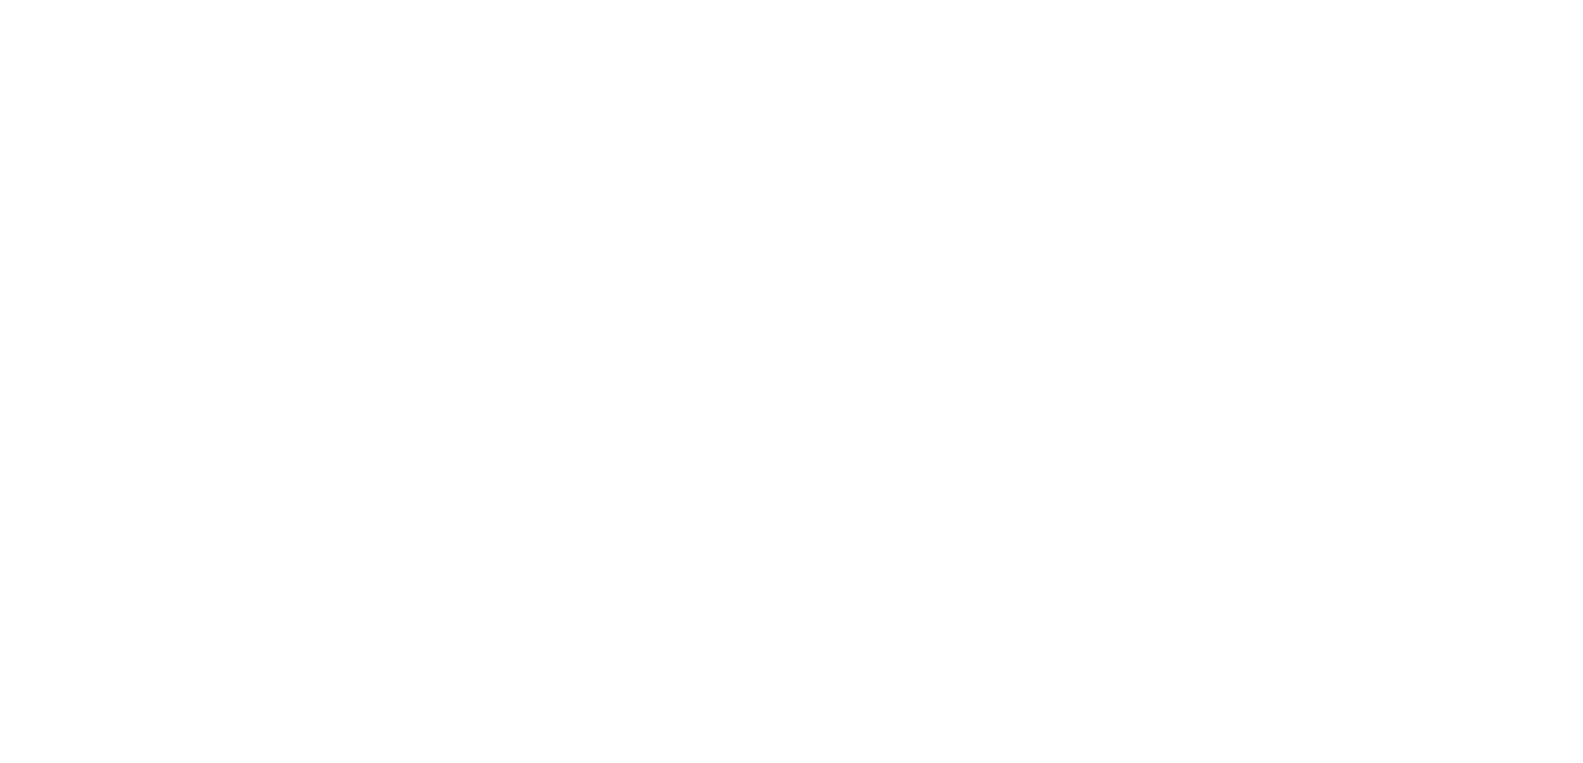 Liva Group logo for dark backgrounds (transparent PNG)